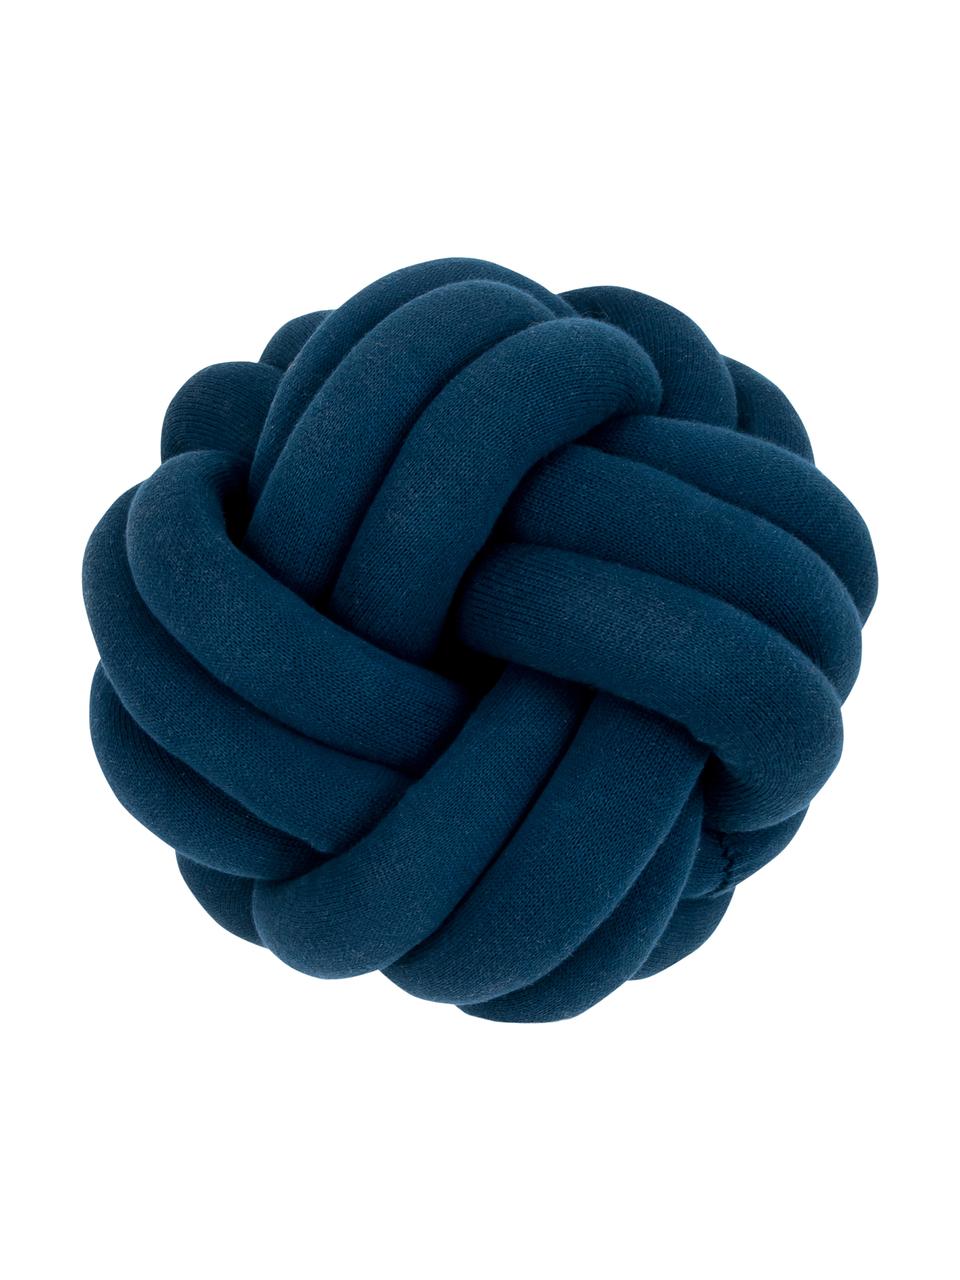 Poduszka Twist, Ciemny niebieski, Ø 30 cm